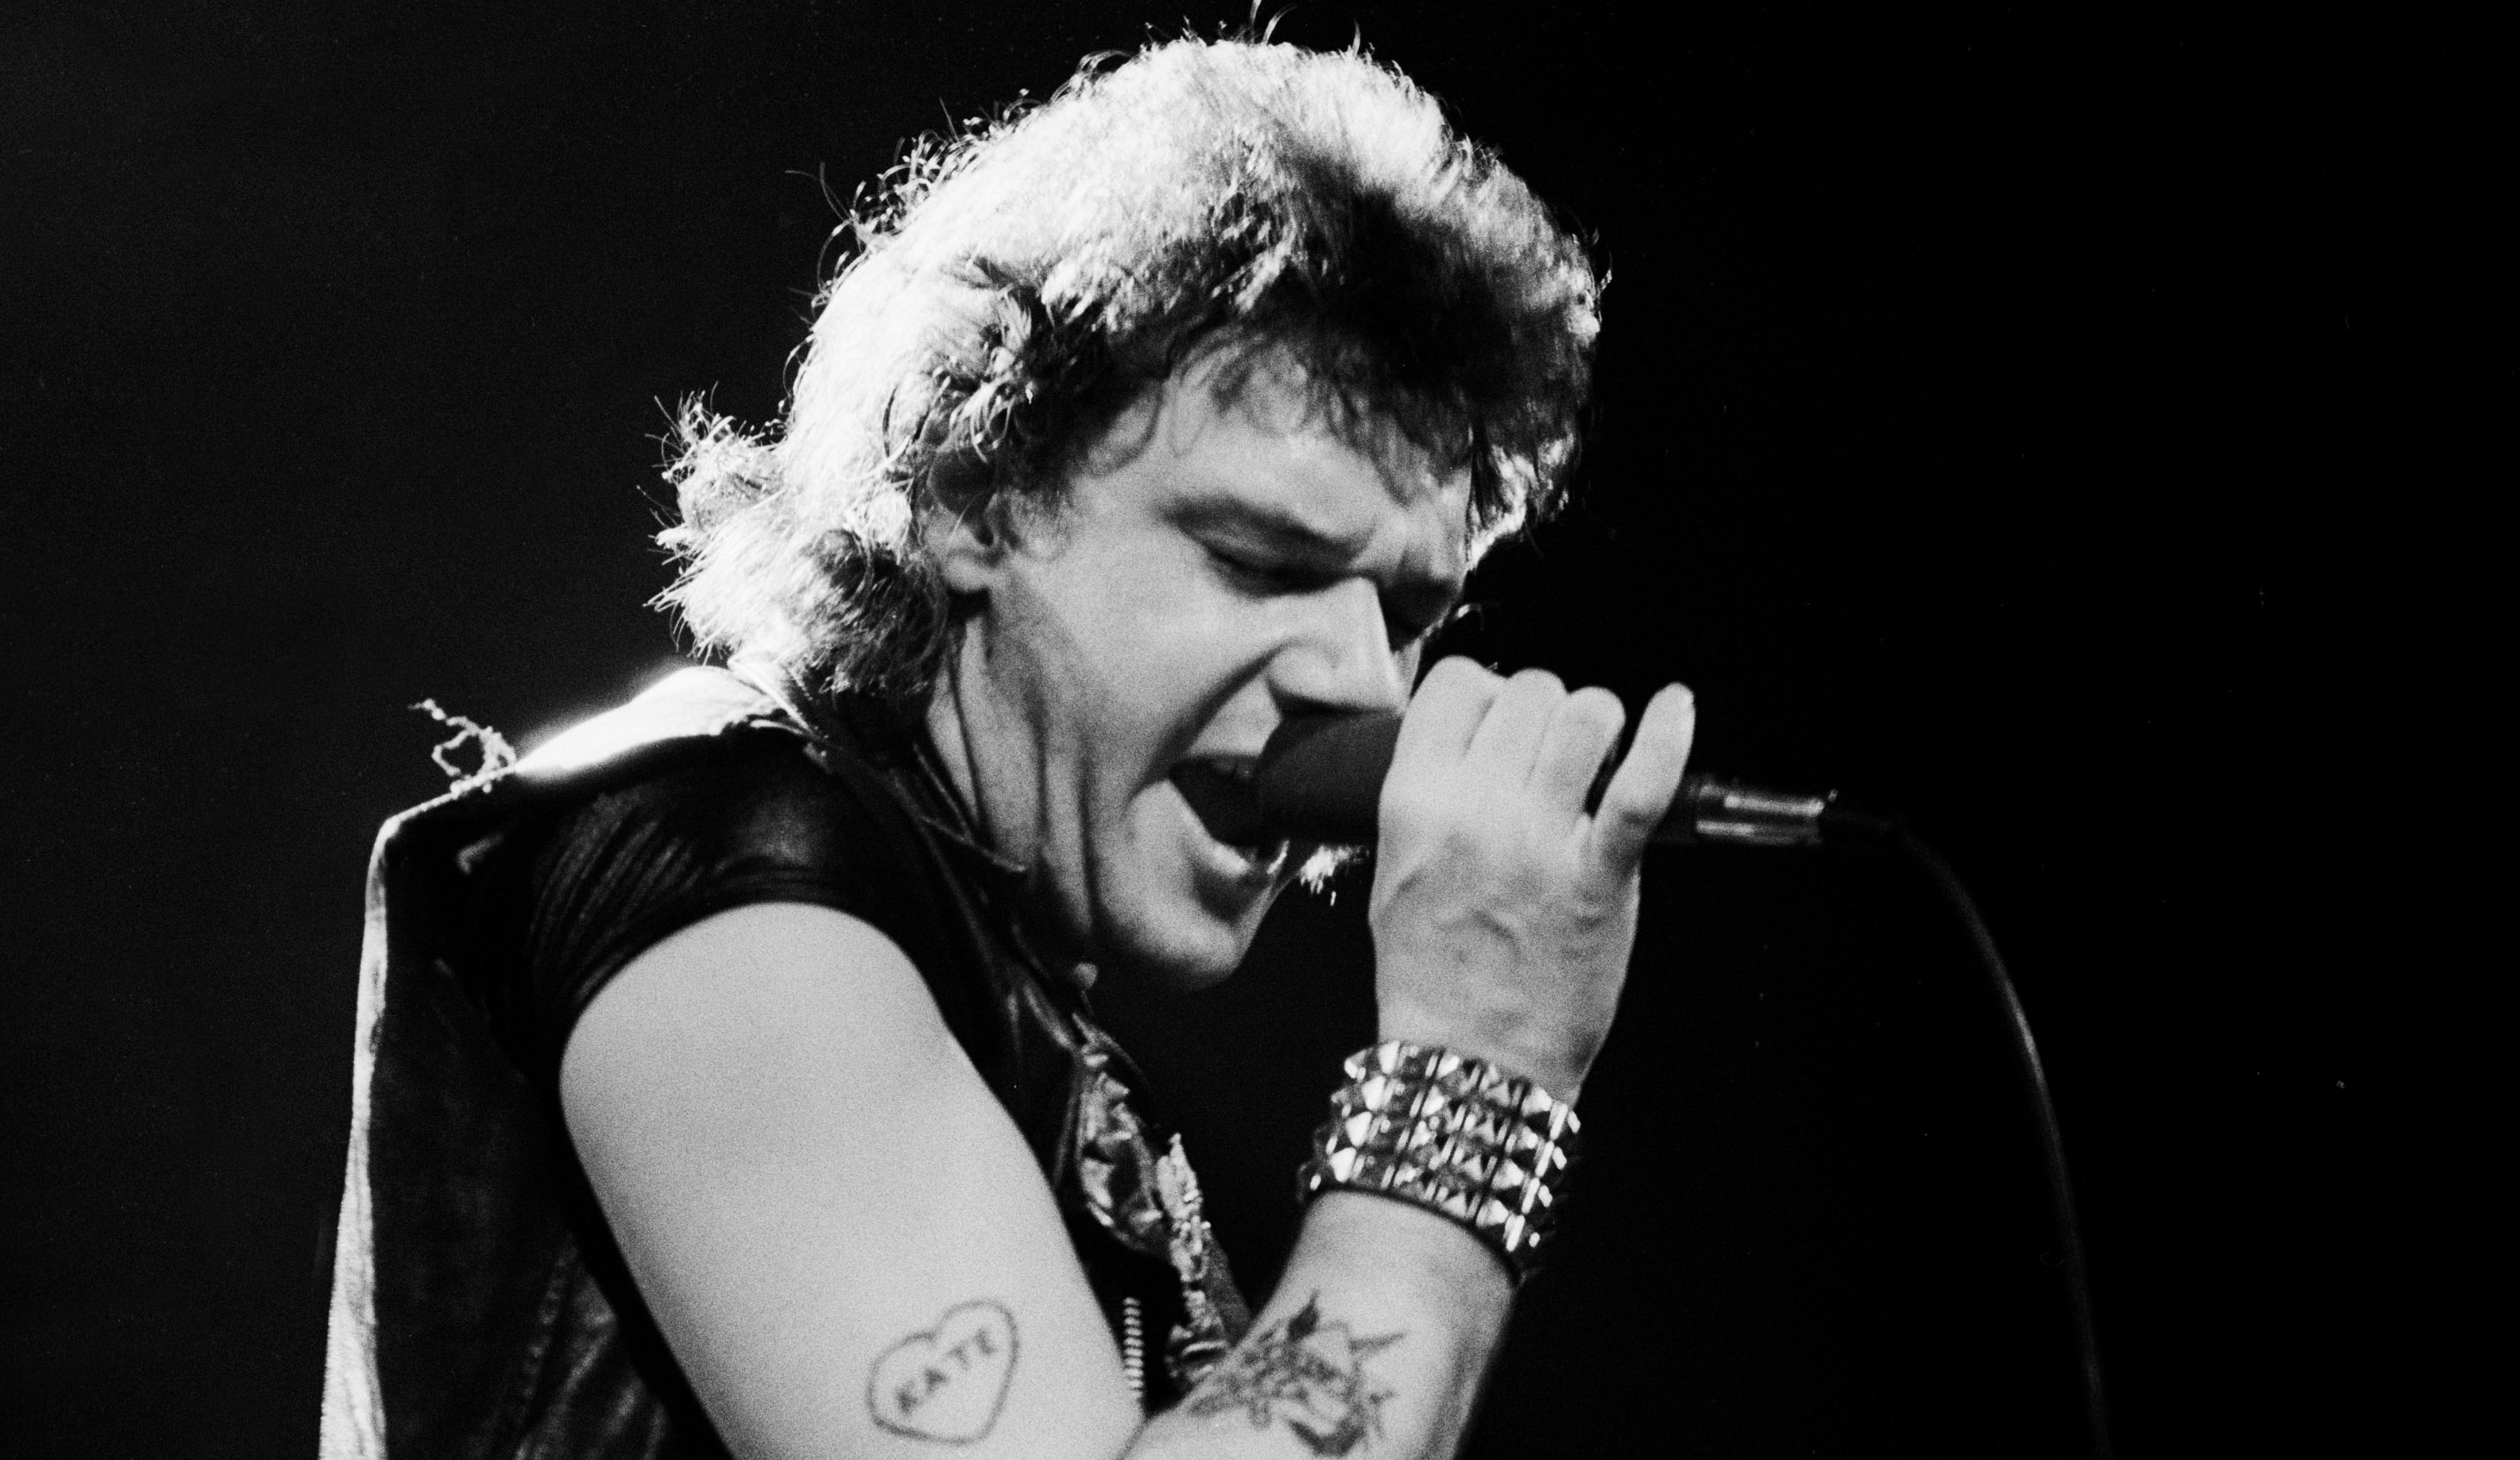 Iron Maiden live 1981 mit Paul Di'Anno